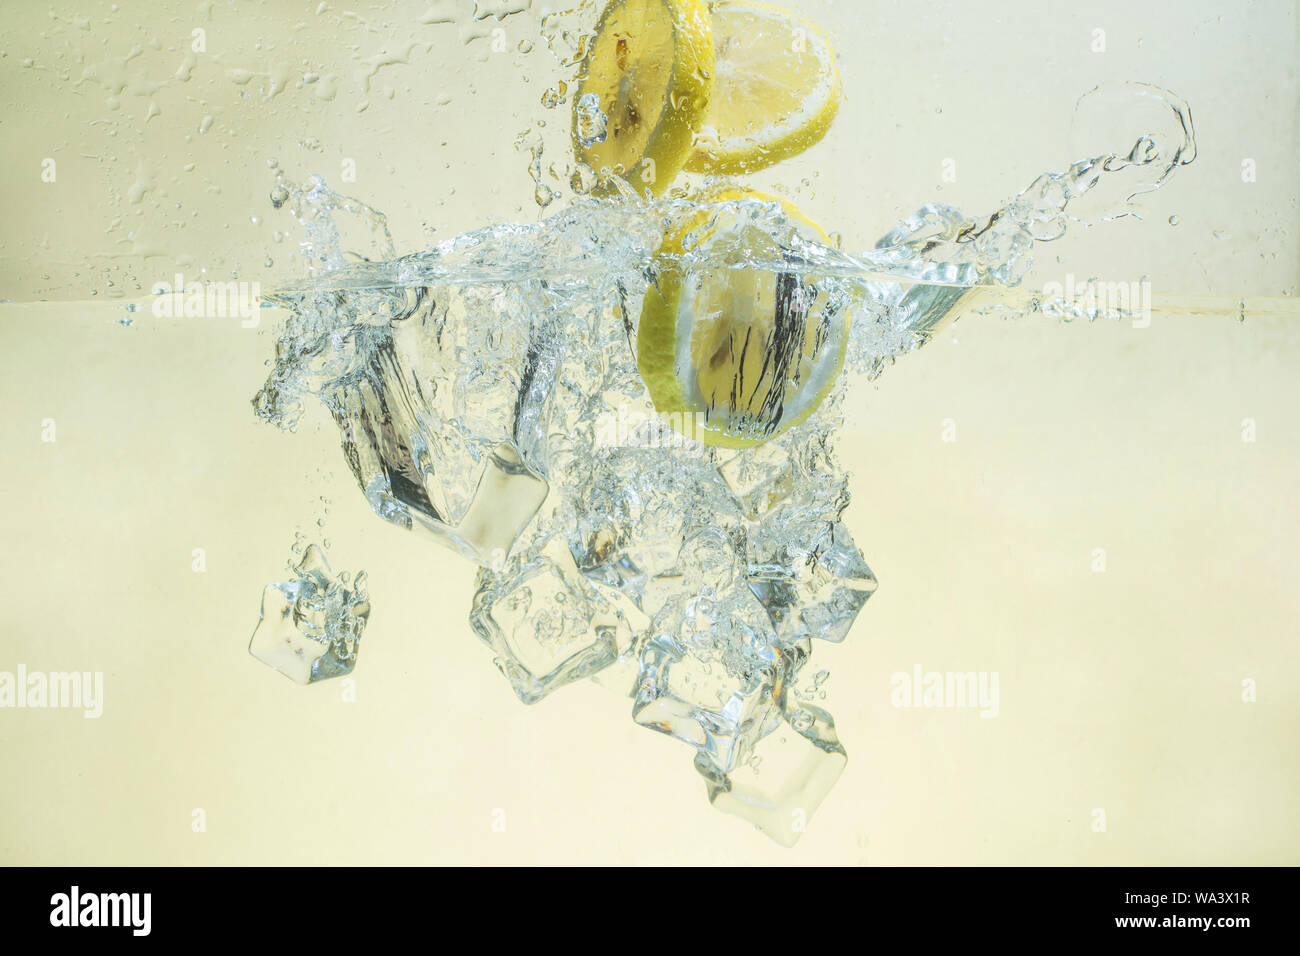 Zitrone und Eis fiel ins Wasser. Stockfoto